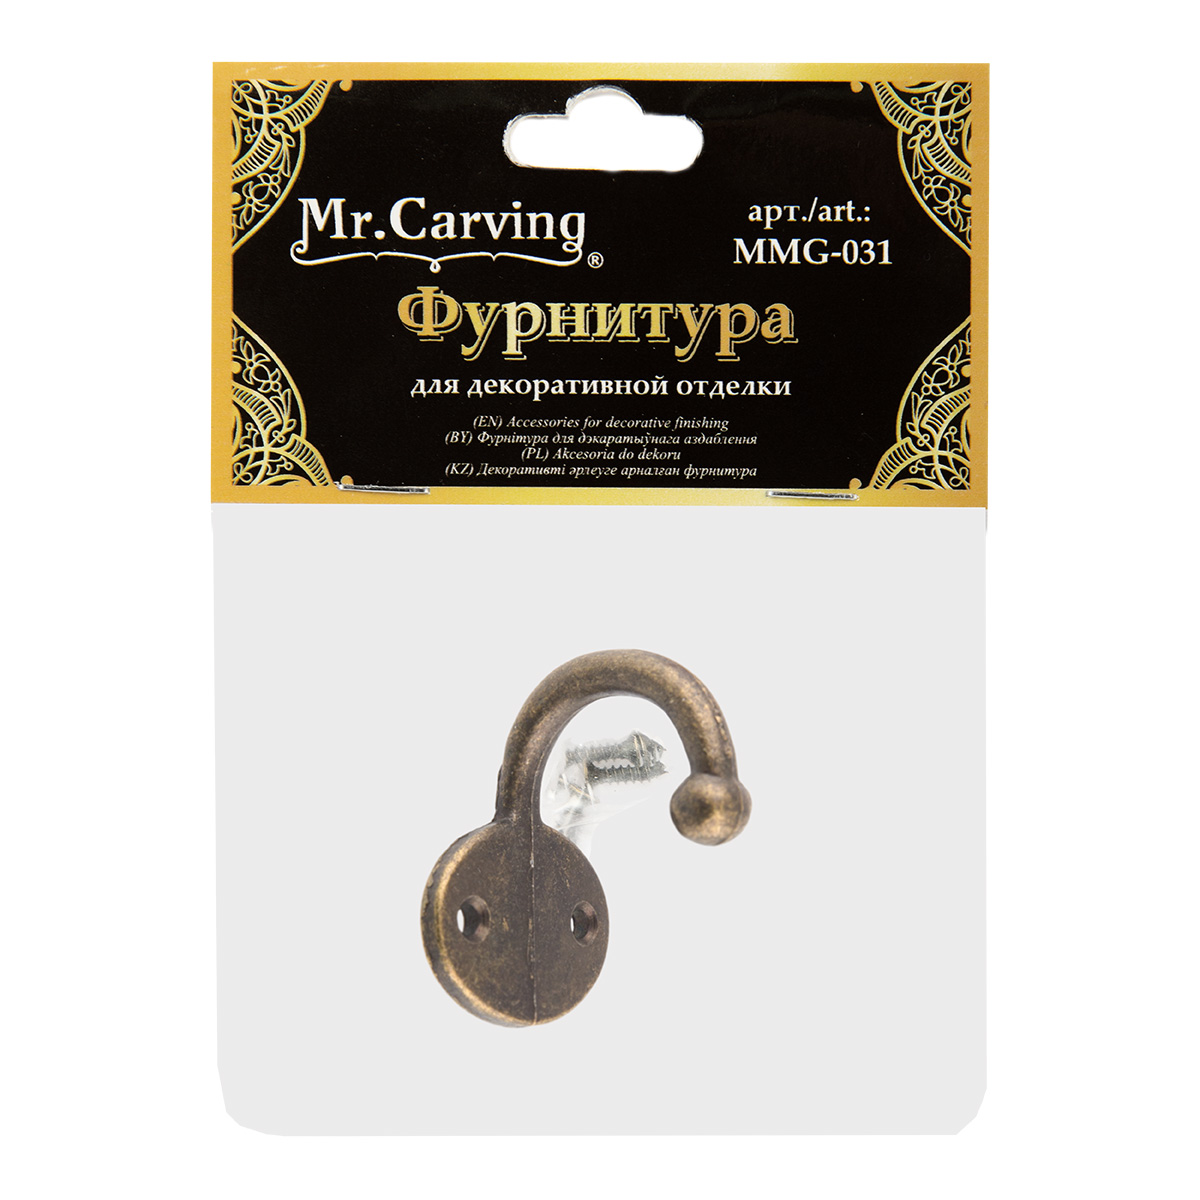 Mr. Carving MMG-031 фурнитура для шкатулок крючок 3.6 x 2.6 см 1 шт. №02 бронза Фото 2.